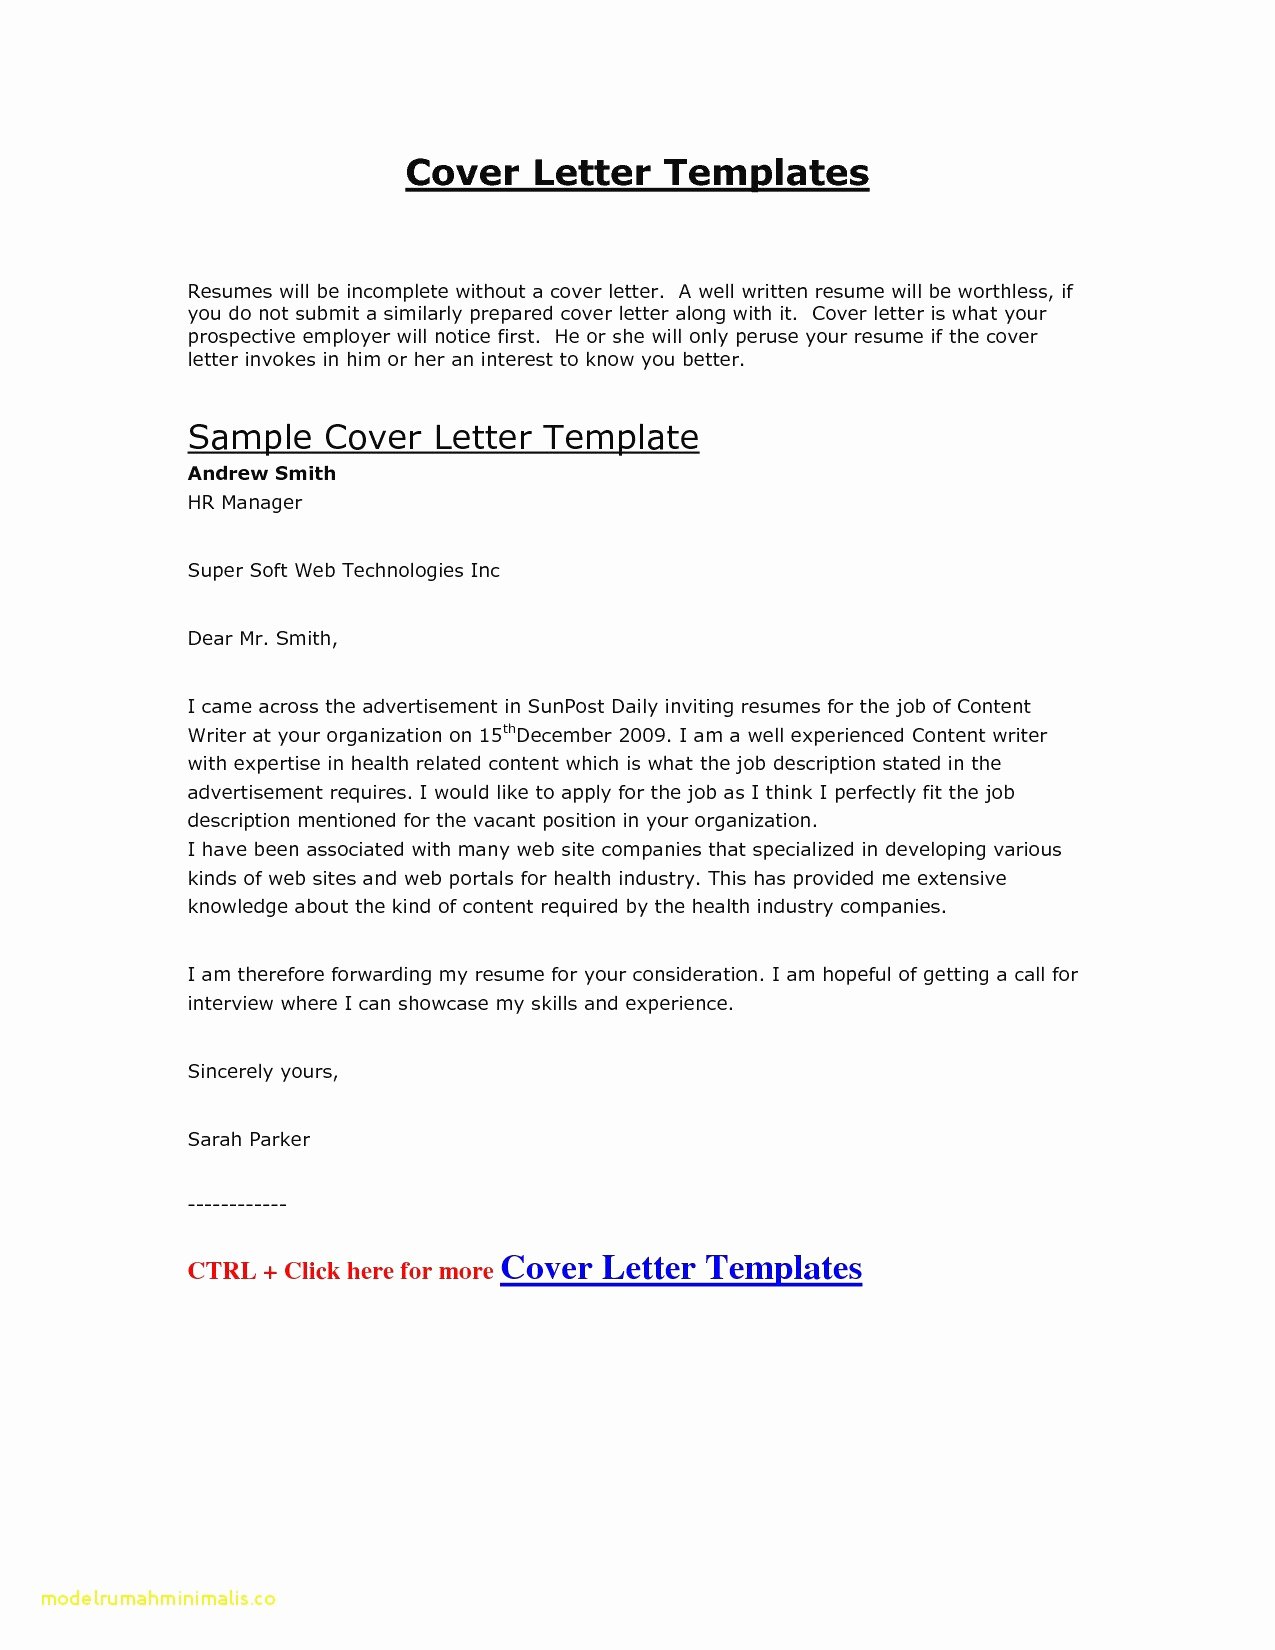 Google Docs Letter Template Unique Google Docs Christmas Letter Template Collection